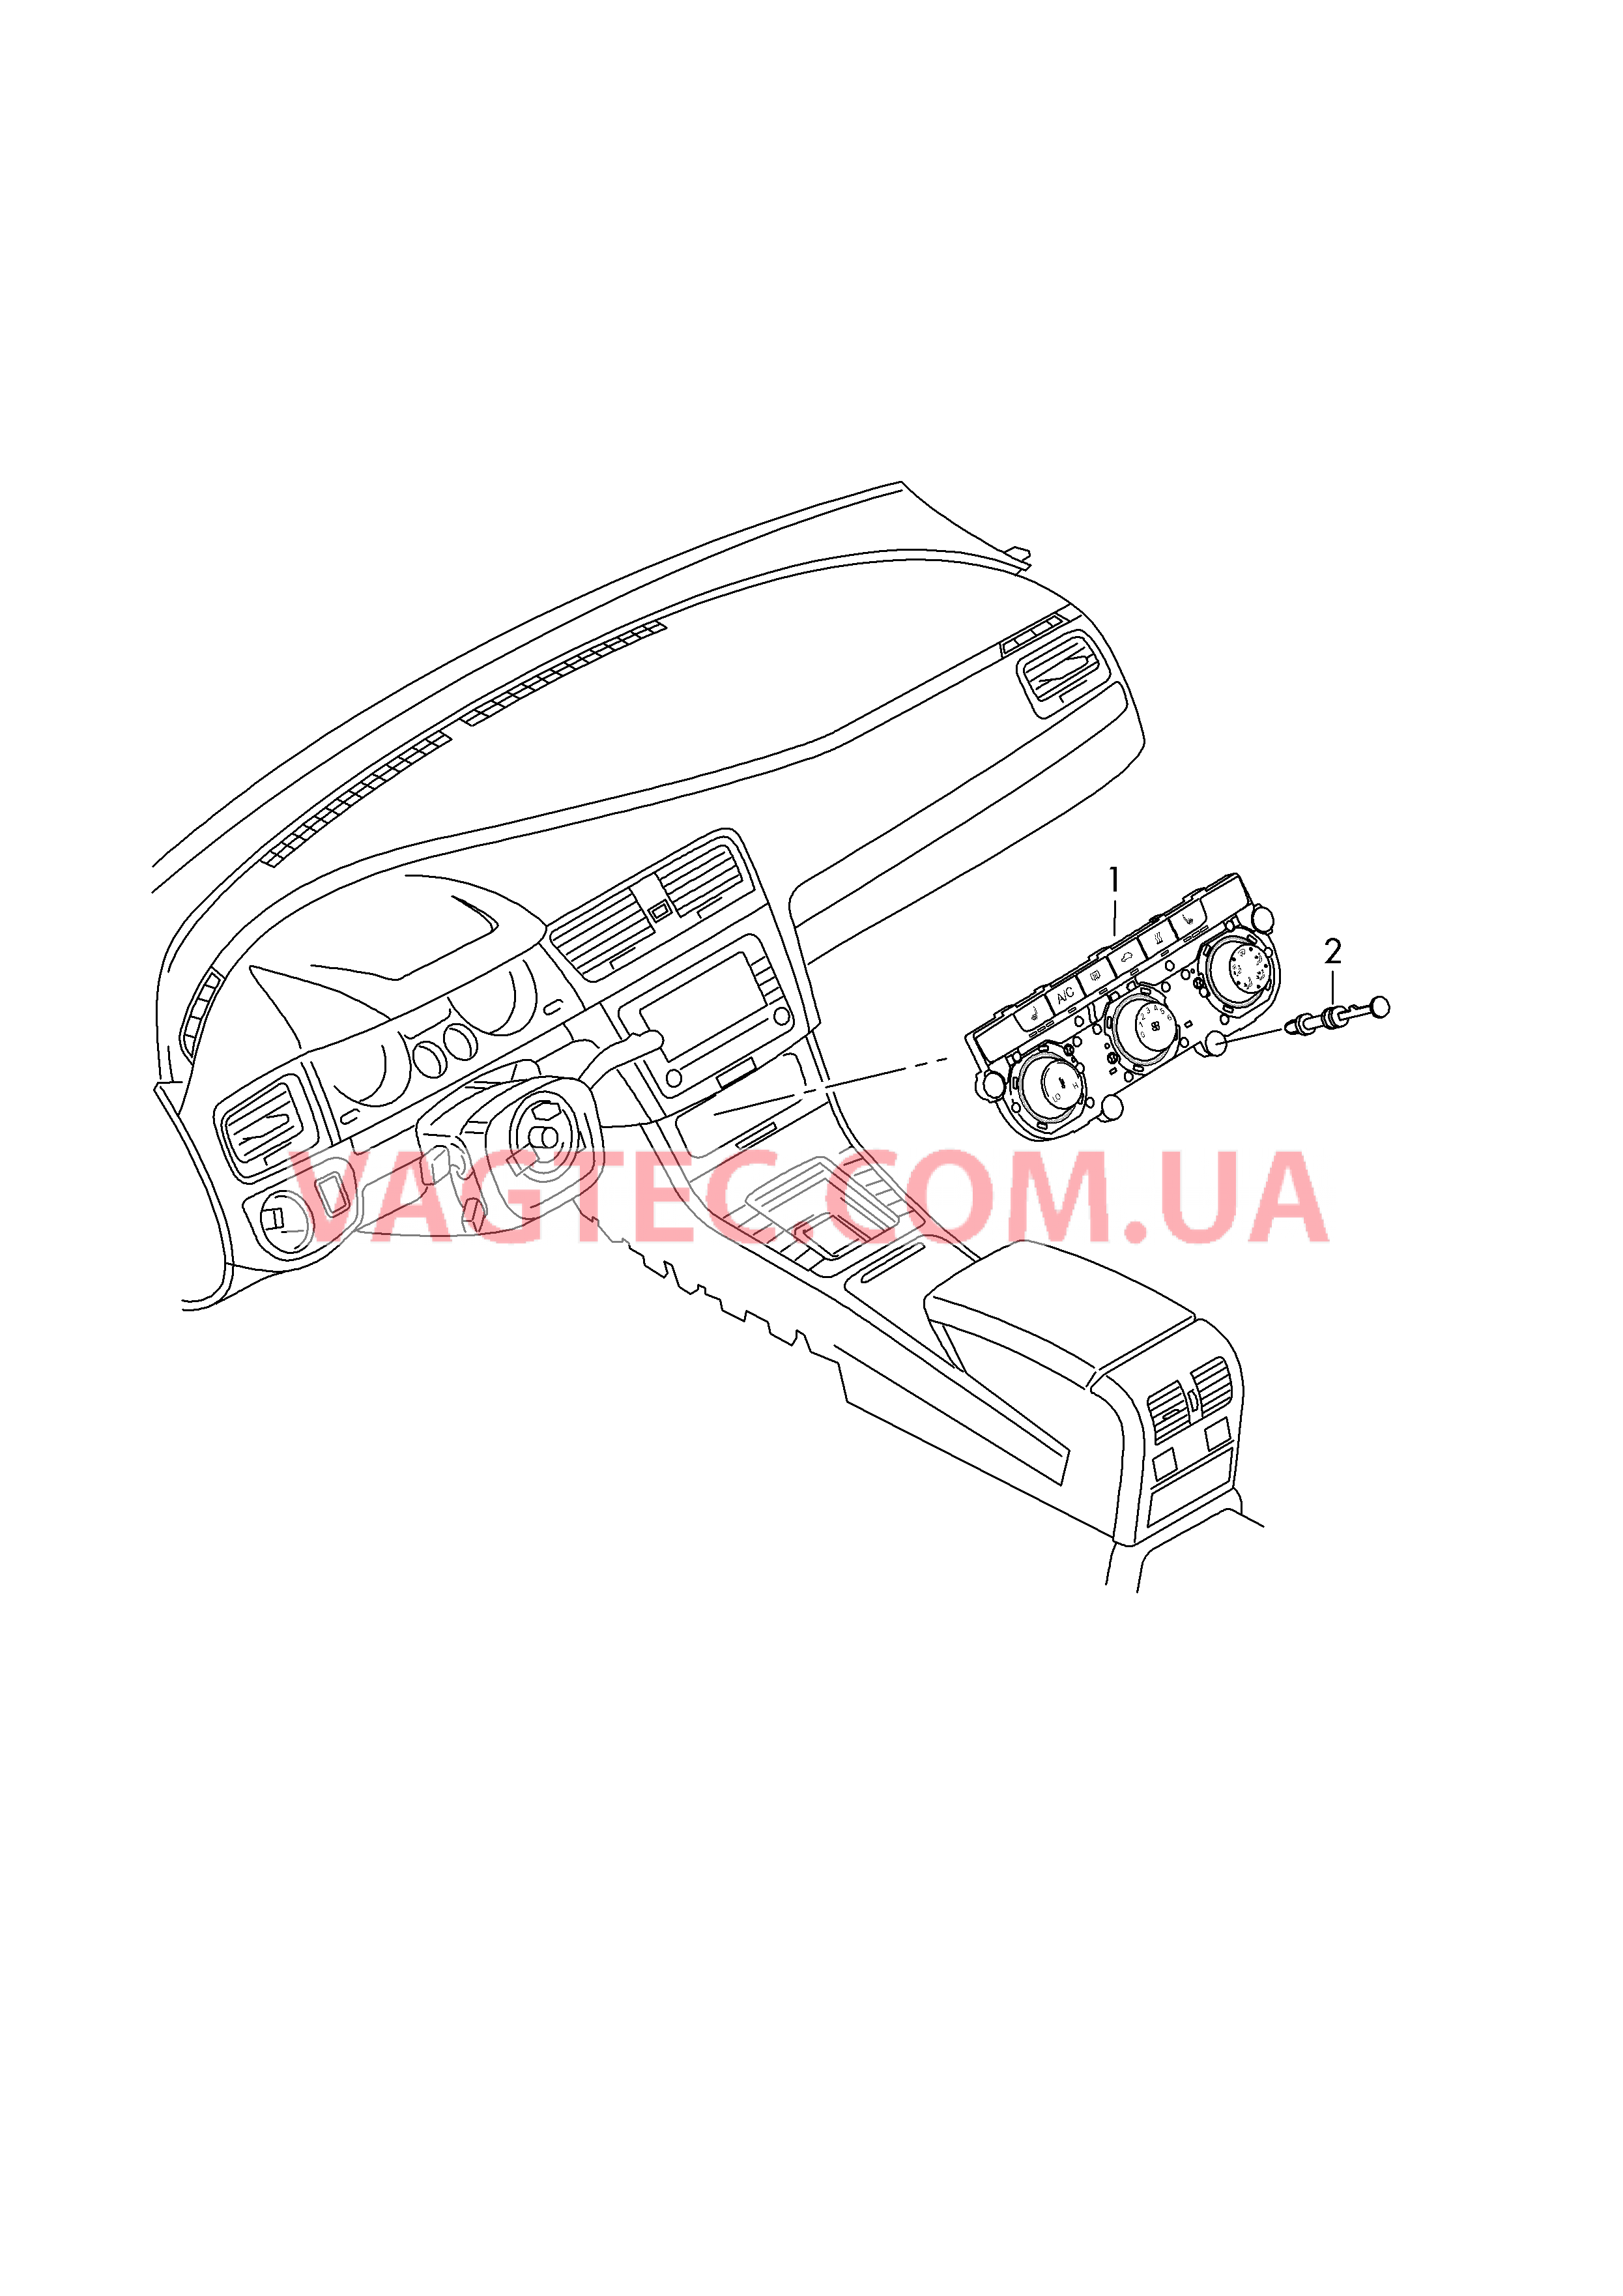 Панель управления и индикации Отопление Кондиционер  для SEAT Leon 2017